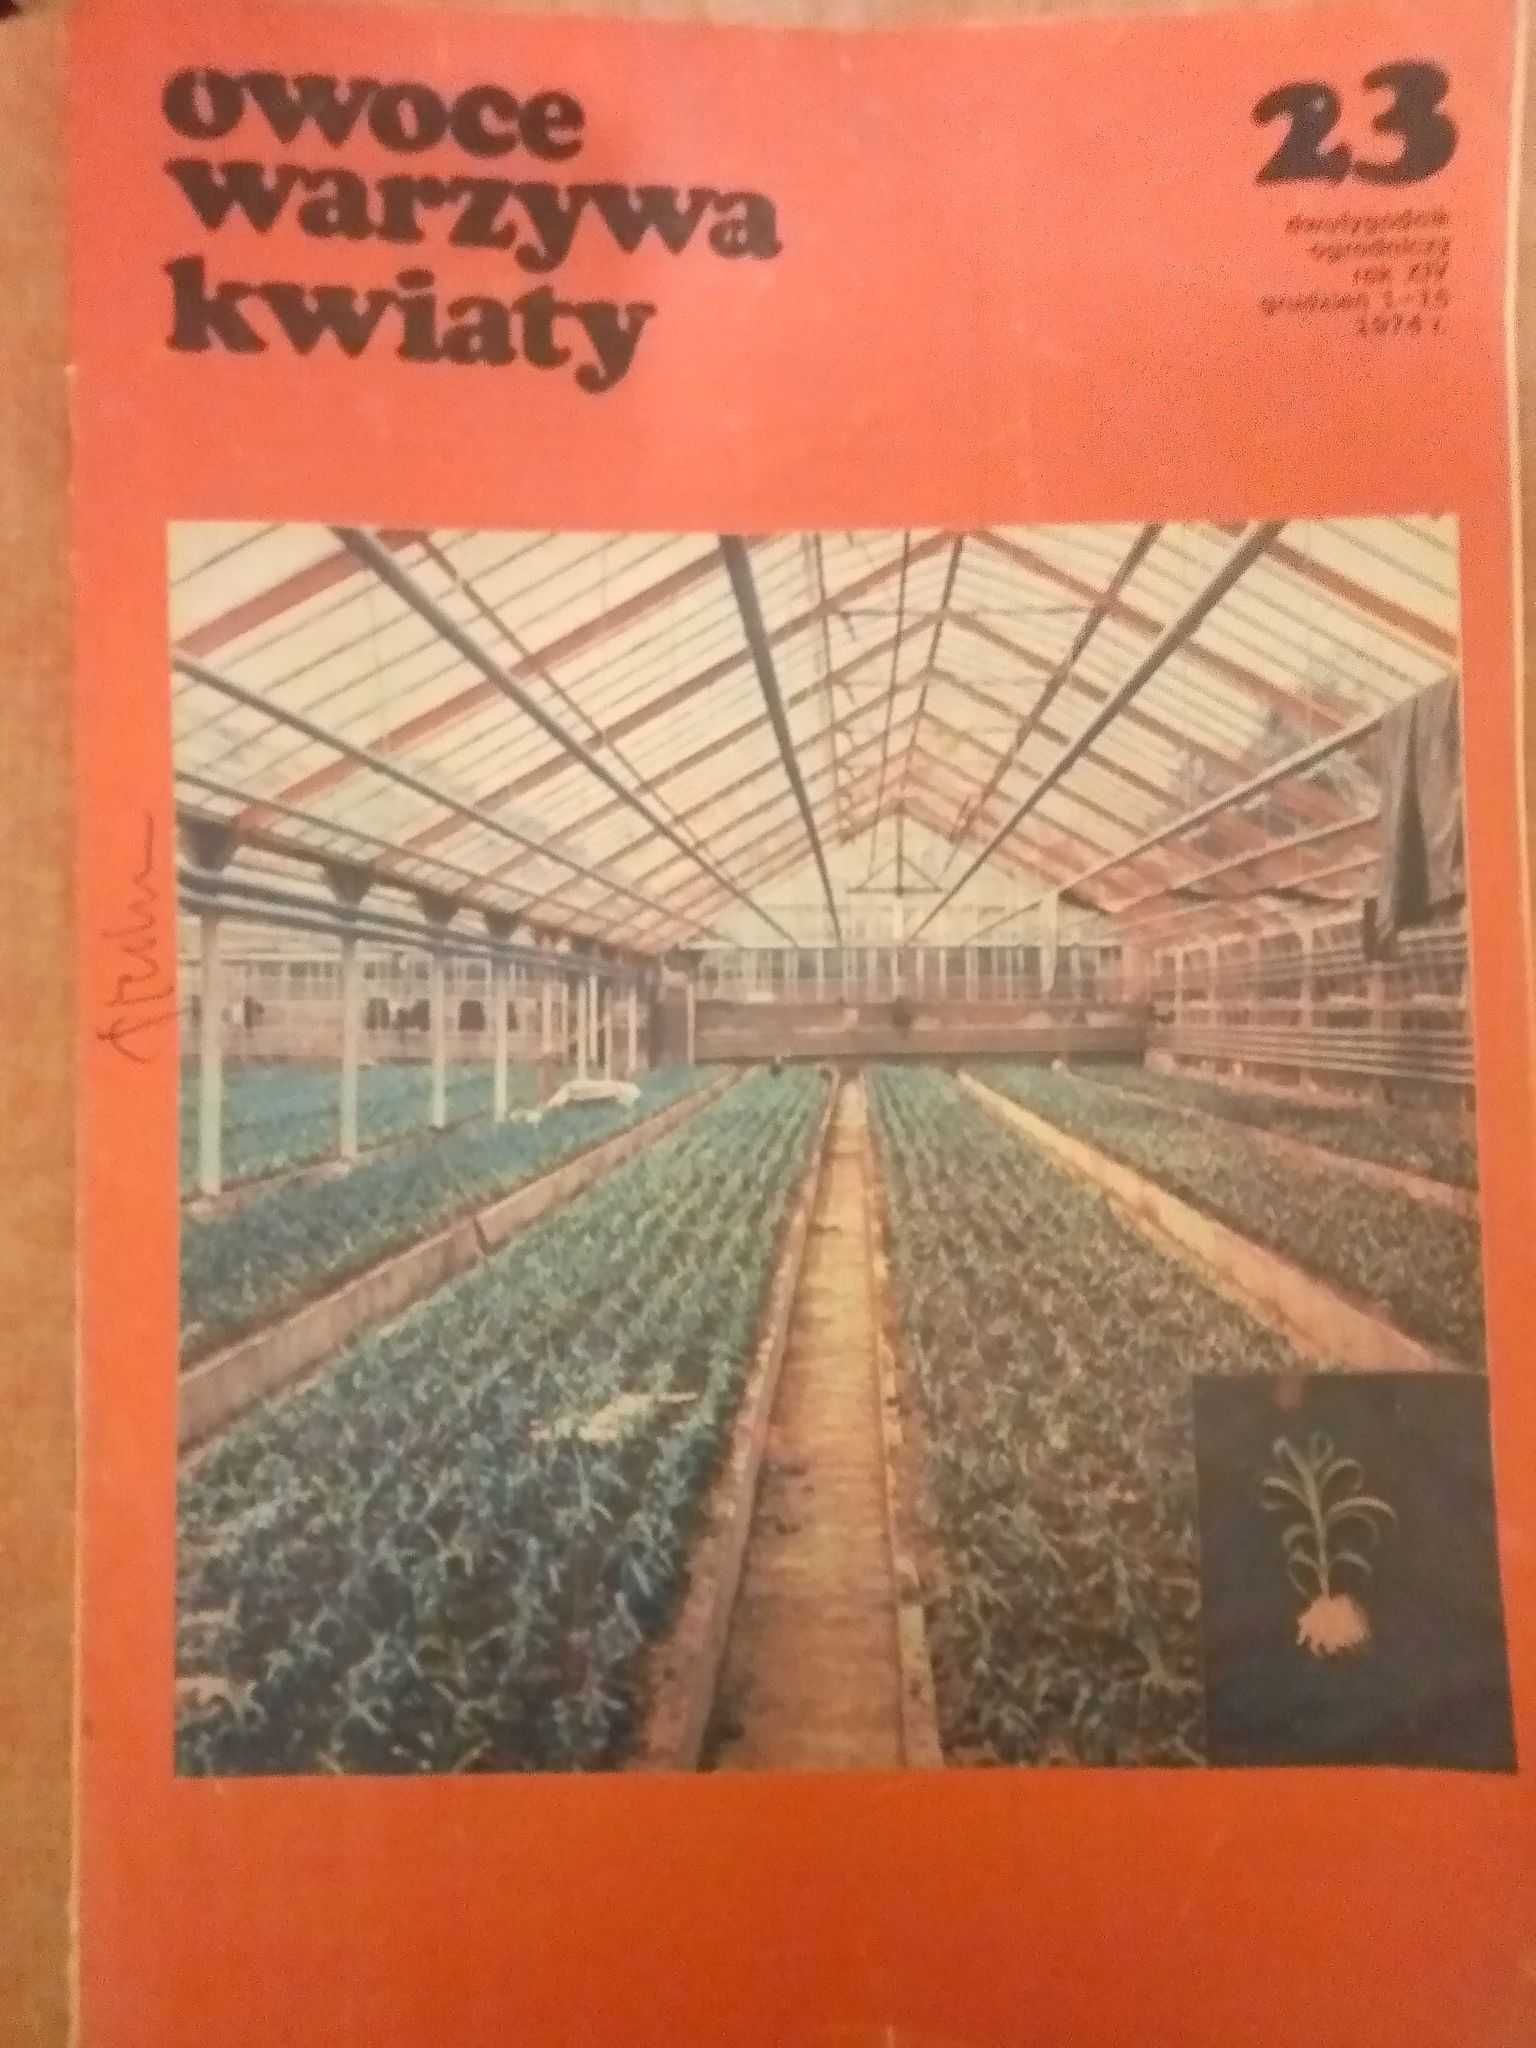 Owoce warzywa kwiaty dwutygodnik 23 1974 ogrodniczy gazeta czasopismo